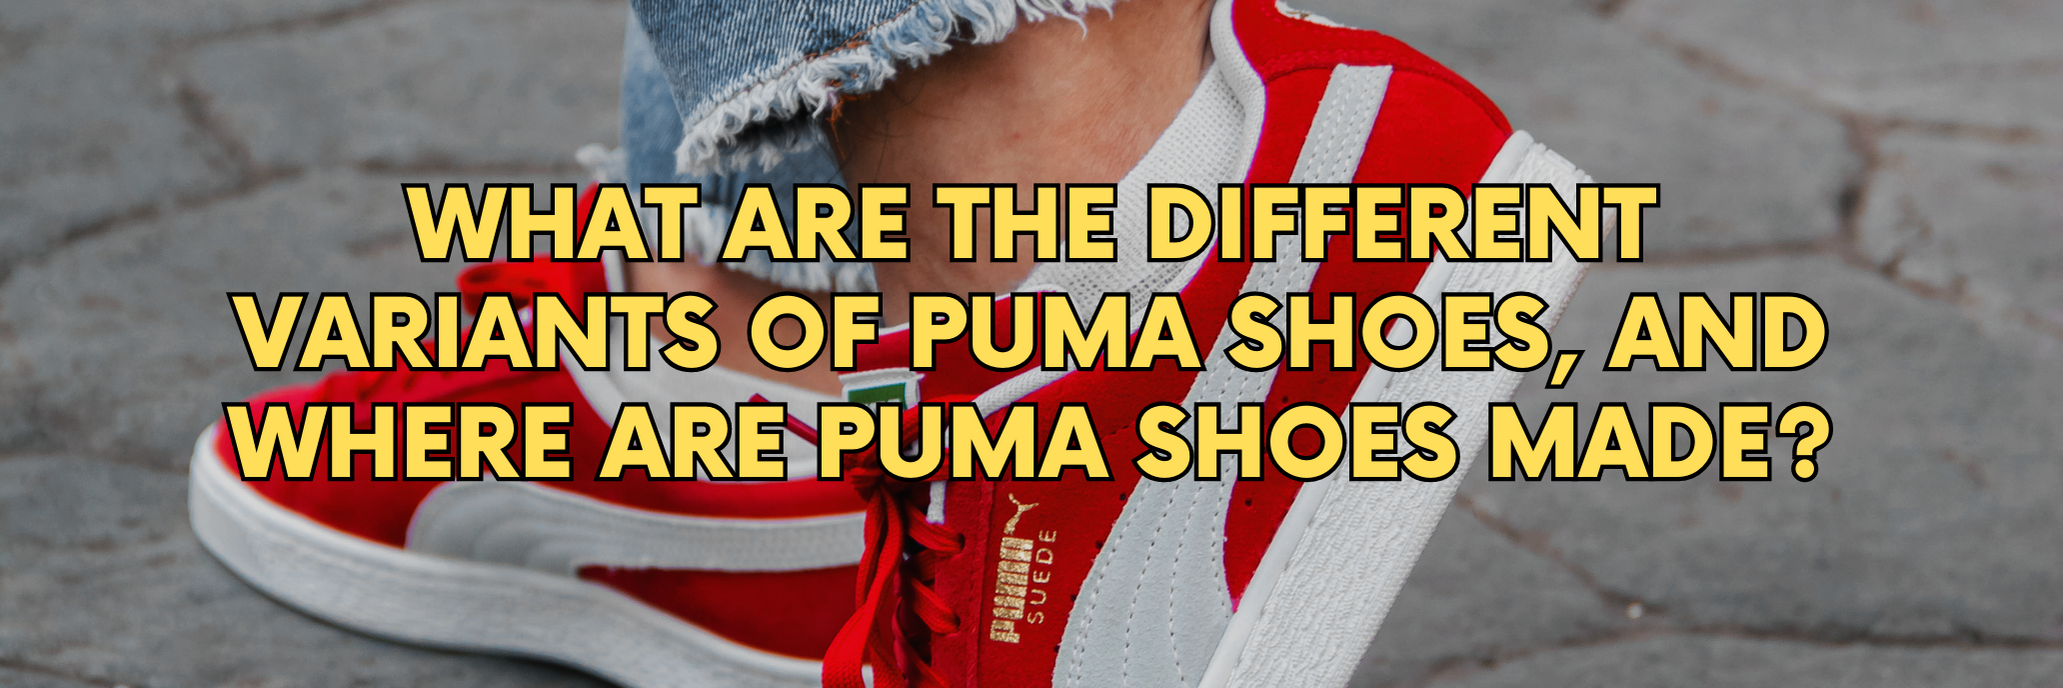 Where are Puma Shoes Made?